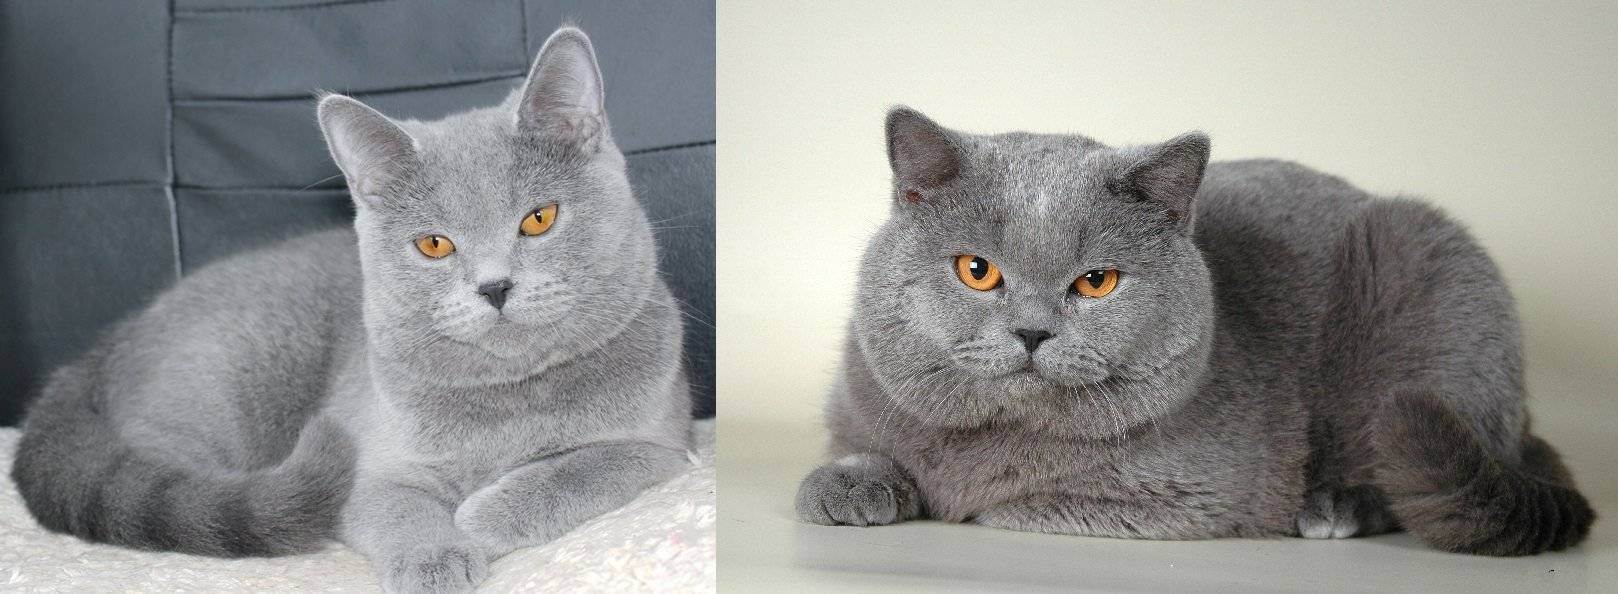 Порода кошек шотландская прямоухая: чем отличается от британской, характер страйтов, наследственные заболевания